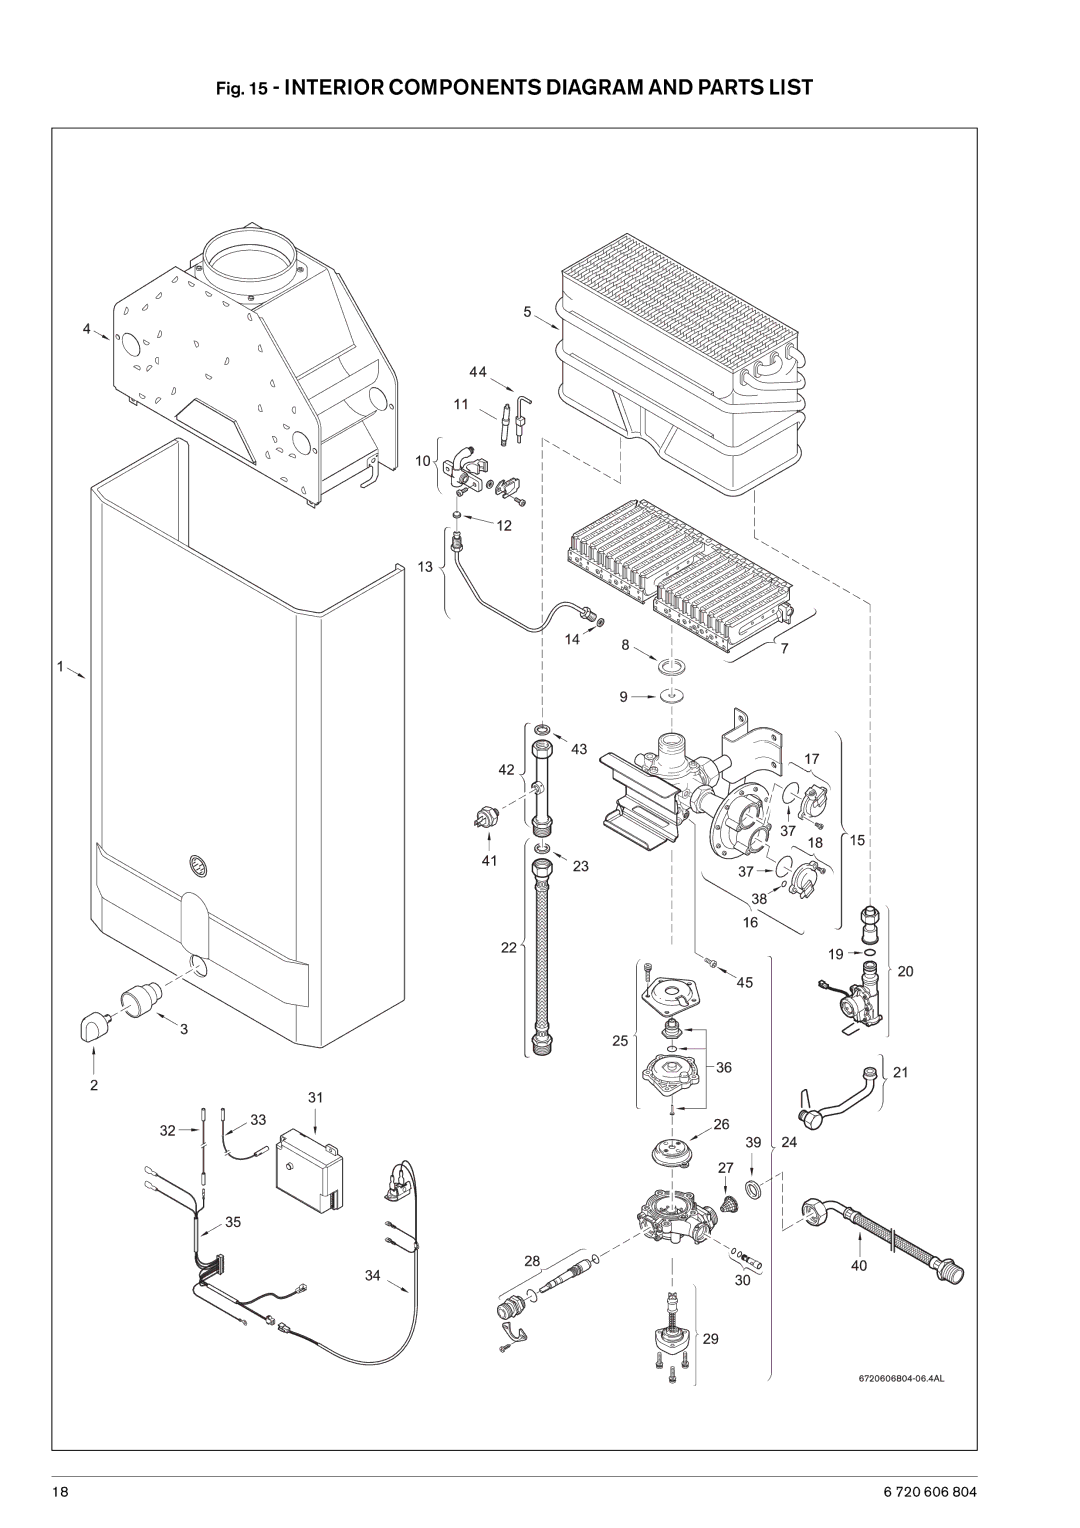 AquaStar 125HX LP, 125HX NG specifications Interior Components Diagram and Parts List 